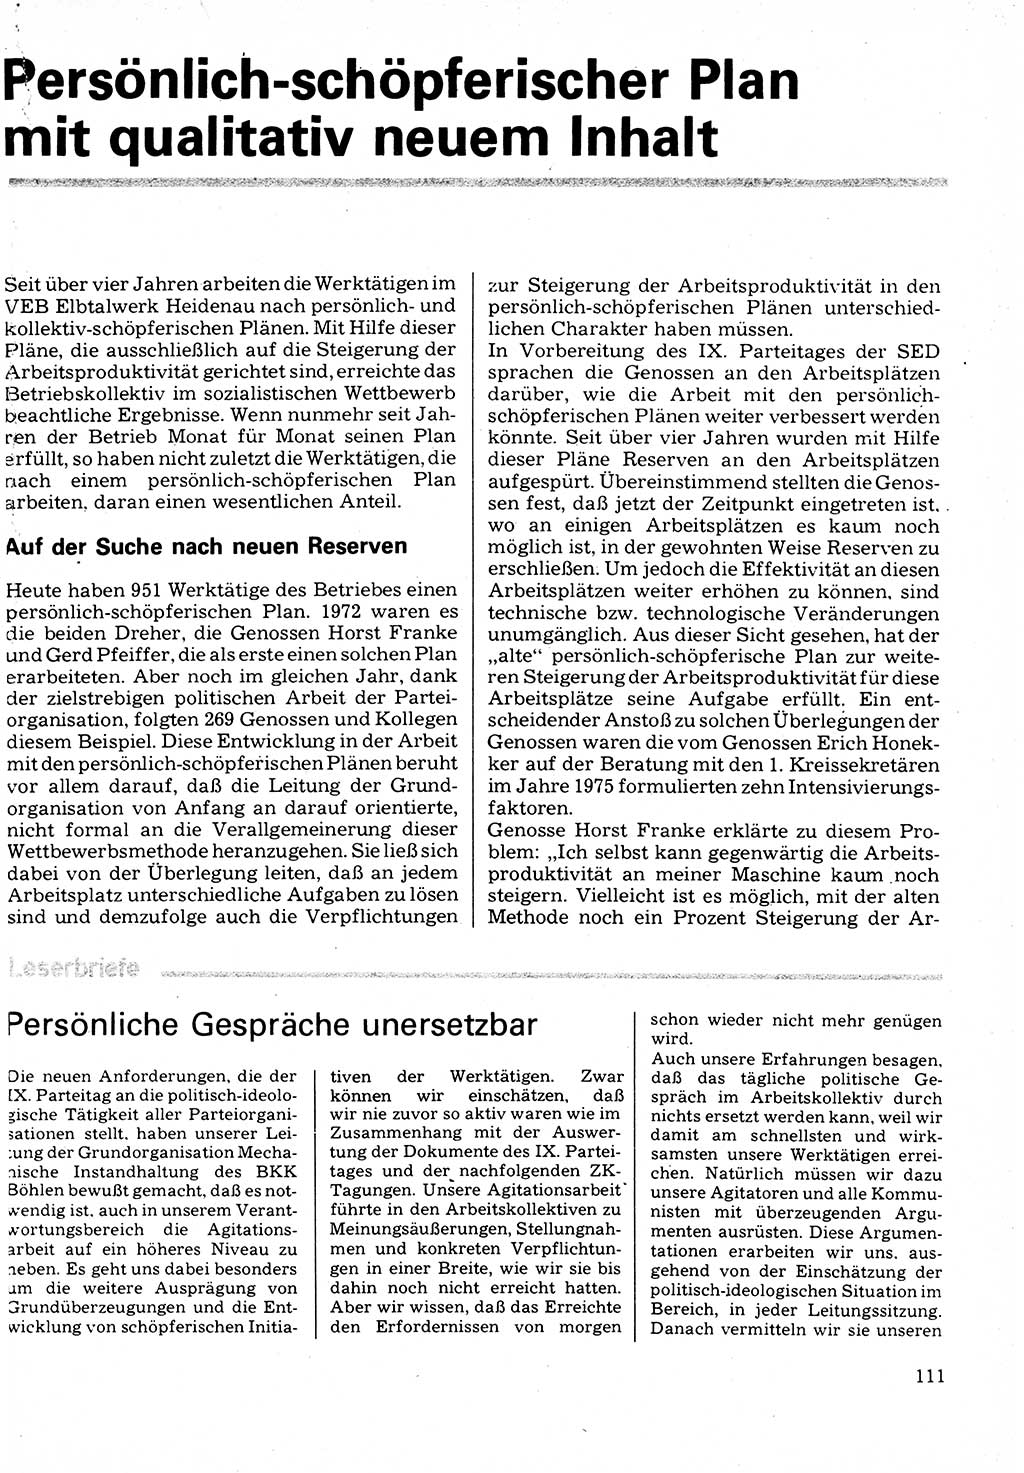 Neuer Weg (NW), Organ des Zentralkomitees (ZK) der SED (Sozialistische Einheitspartei Deutschlands) für Fragen des Parteilebens, 32. Jahrgang [Deutsche Demokratische Republik (DDR)] 1977, Seite 111 (NW ZK SED DDR 1977, S. 111)